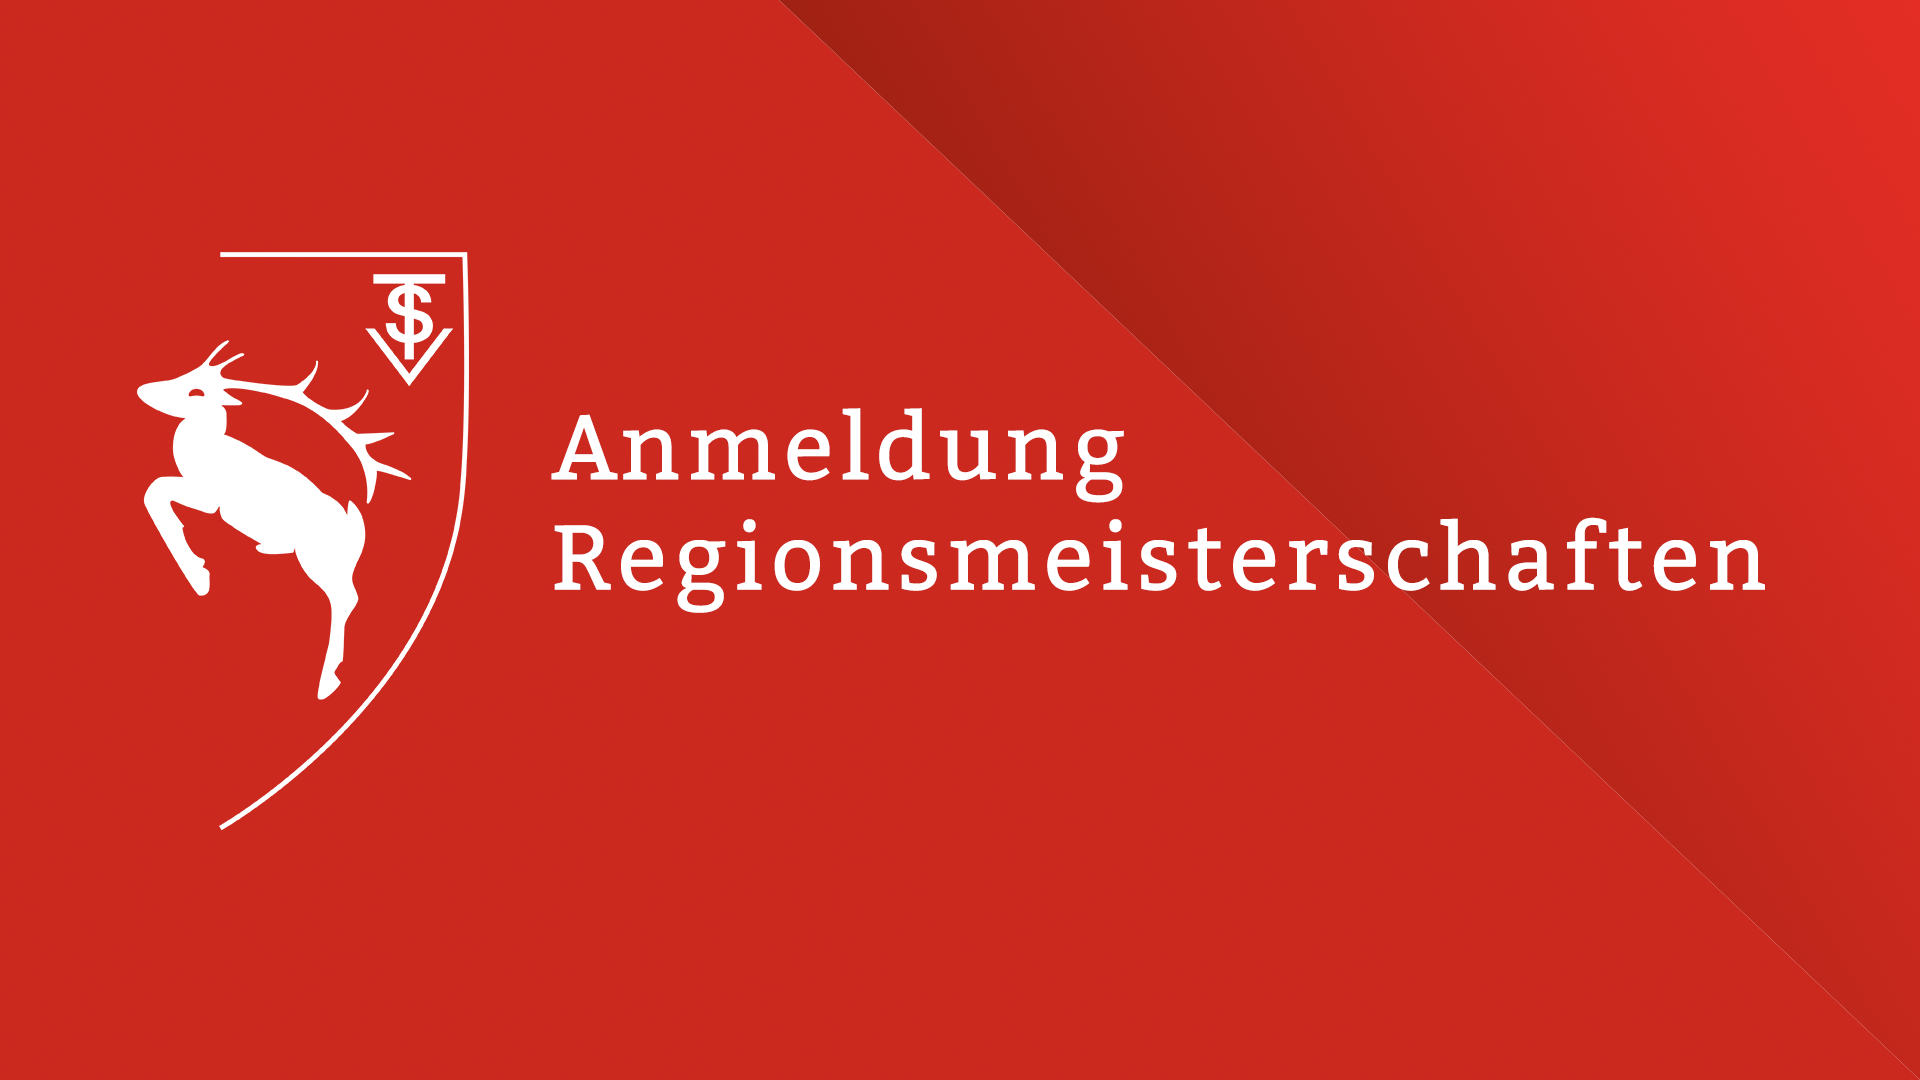 Featured image for “Anmeldung Regionsmeisterschaften”